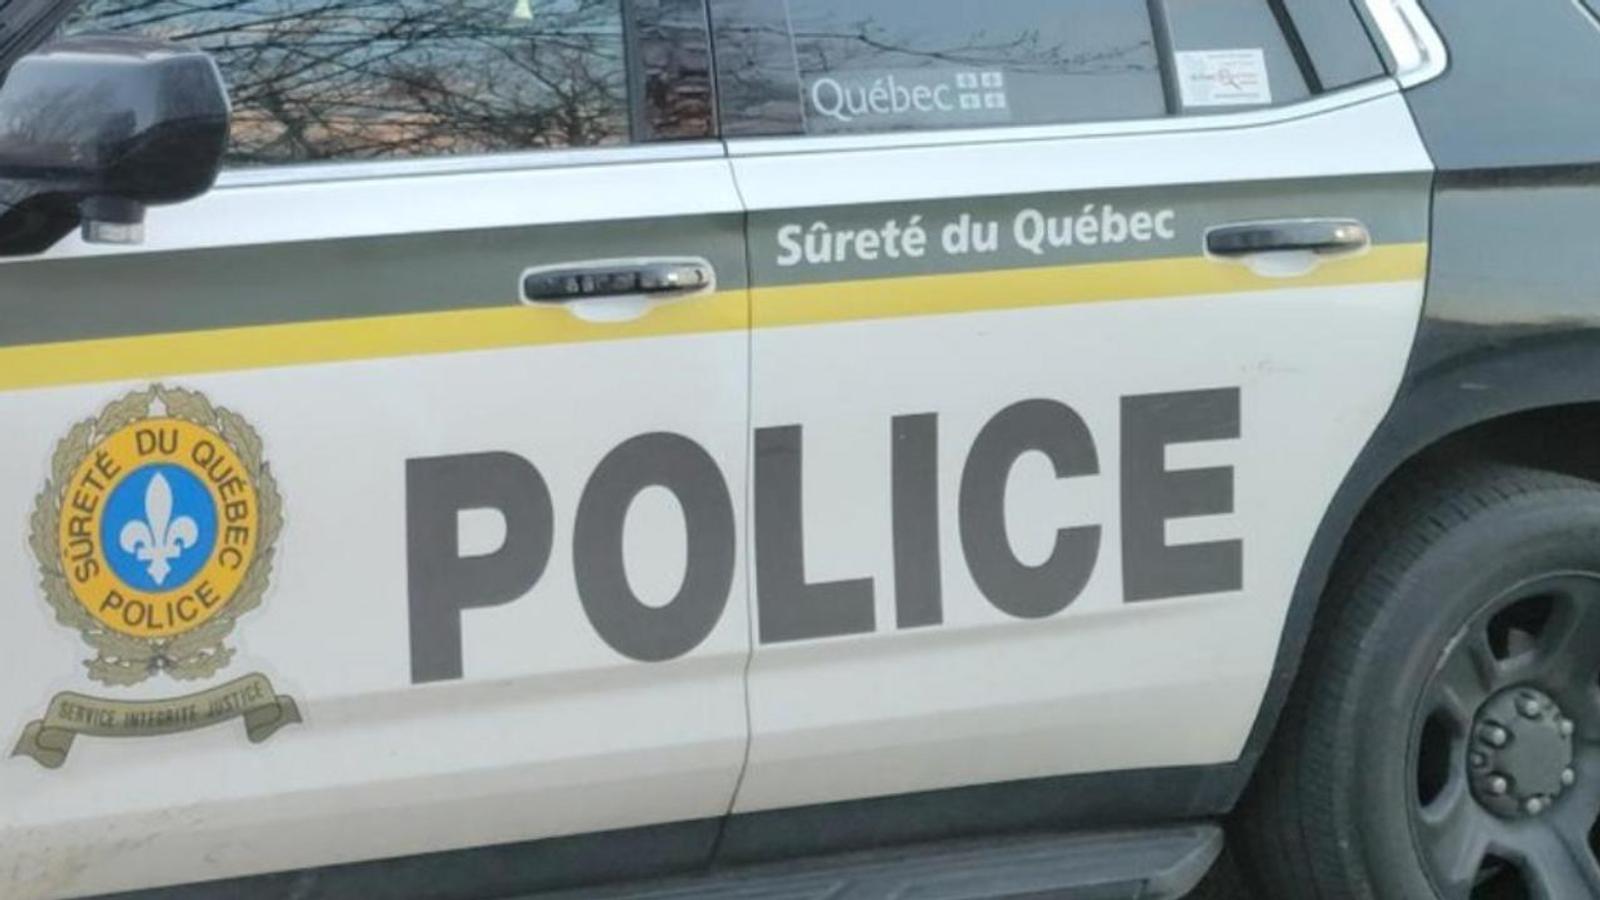 Interceptée par la Sûreté du Québec, une jeune conductrice écope de 3500$ en contraventions 